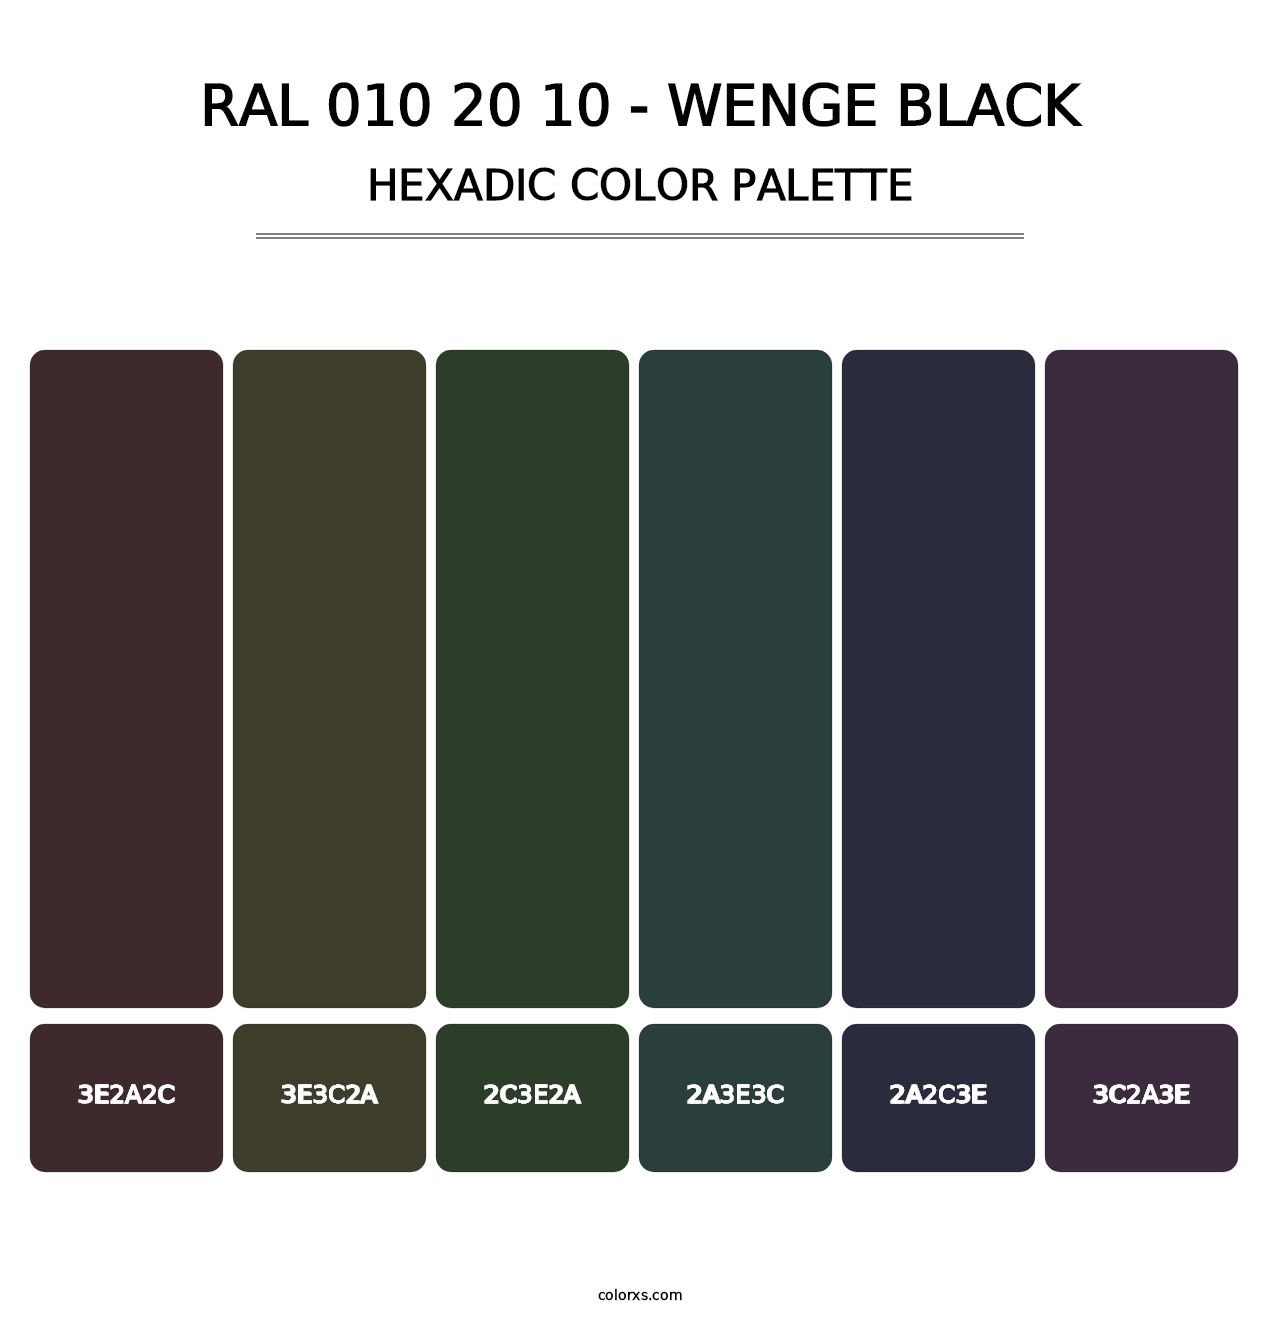 RAL 010 20 10 - Wenge Black - Hexadic Color Palette